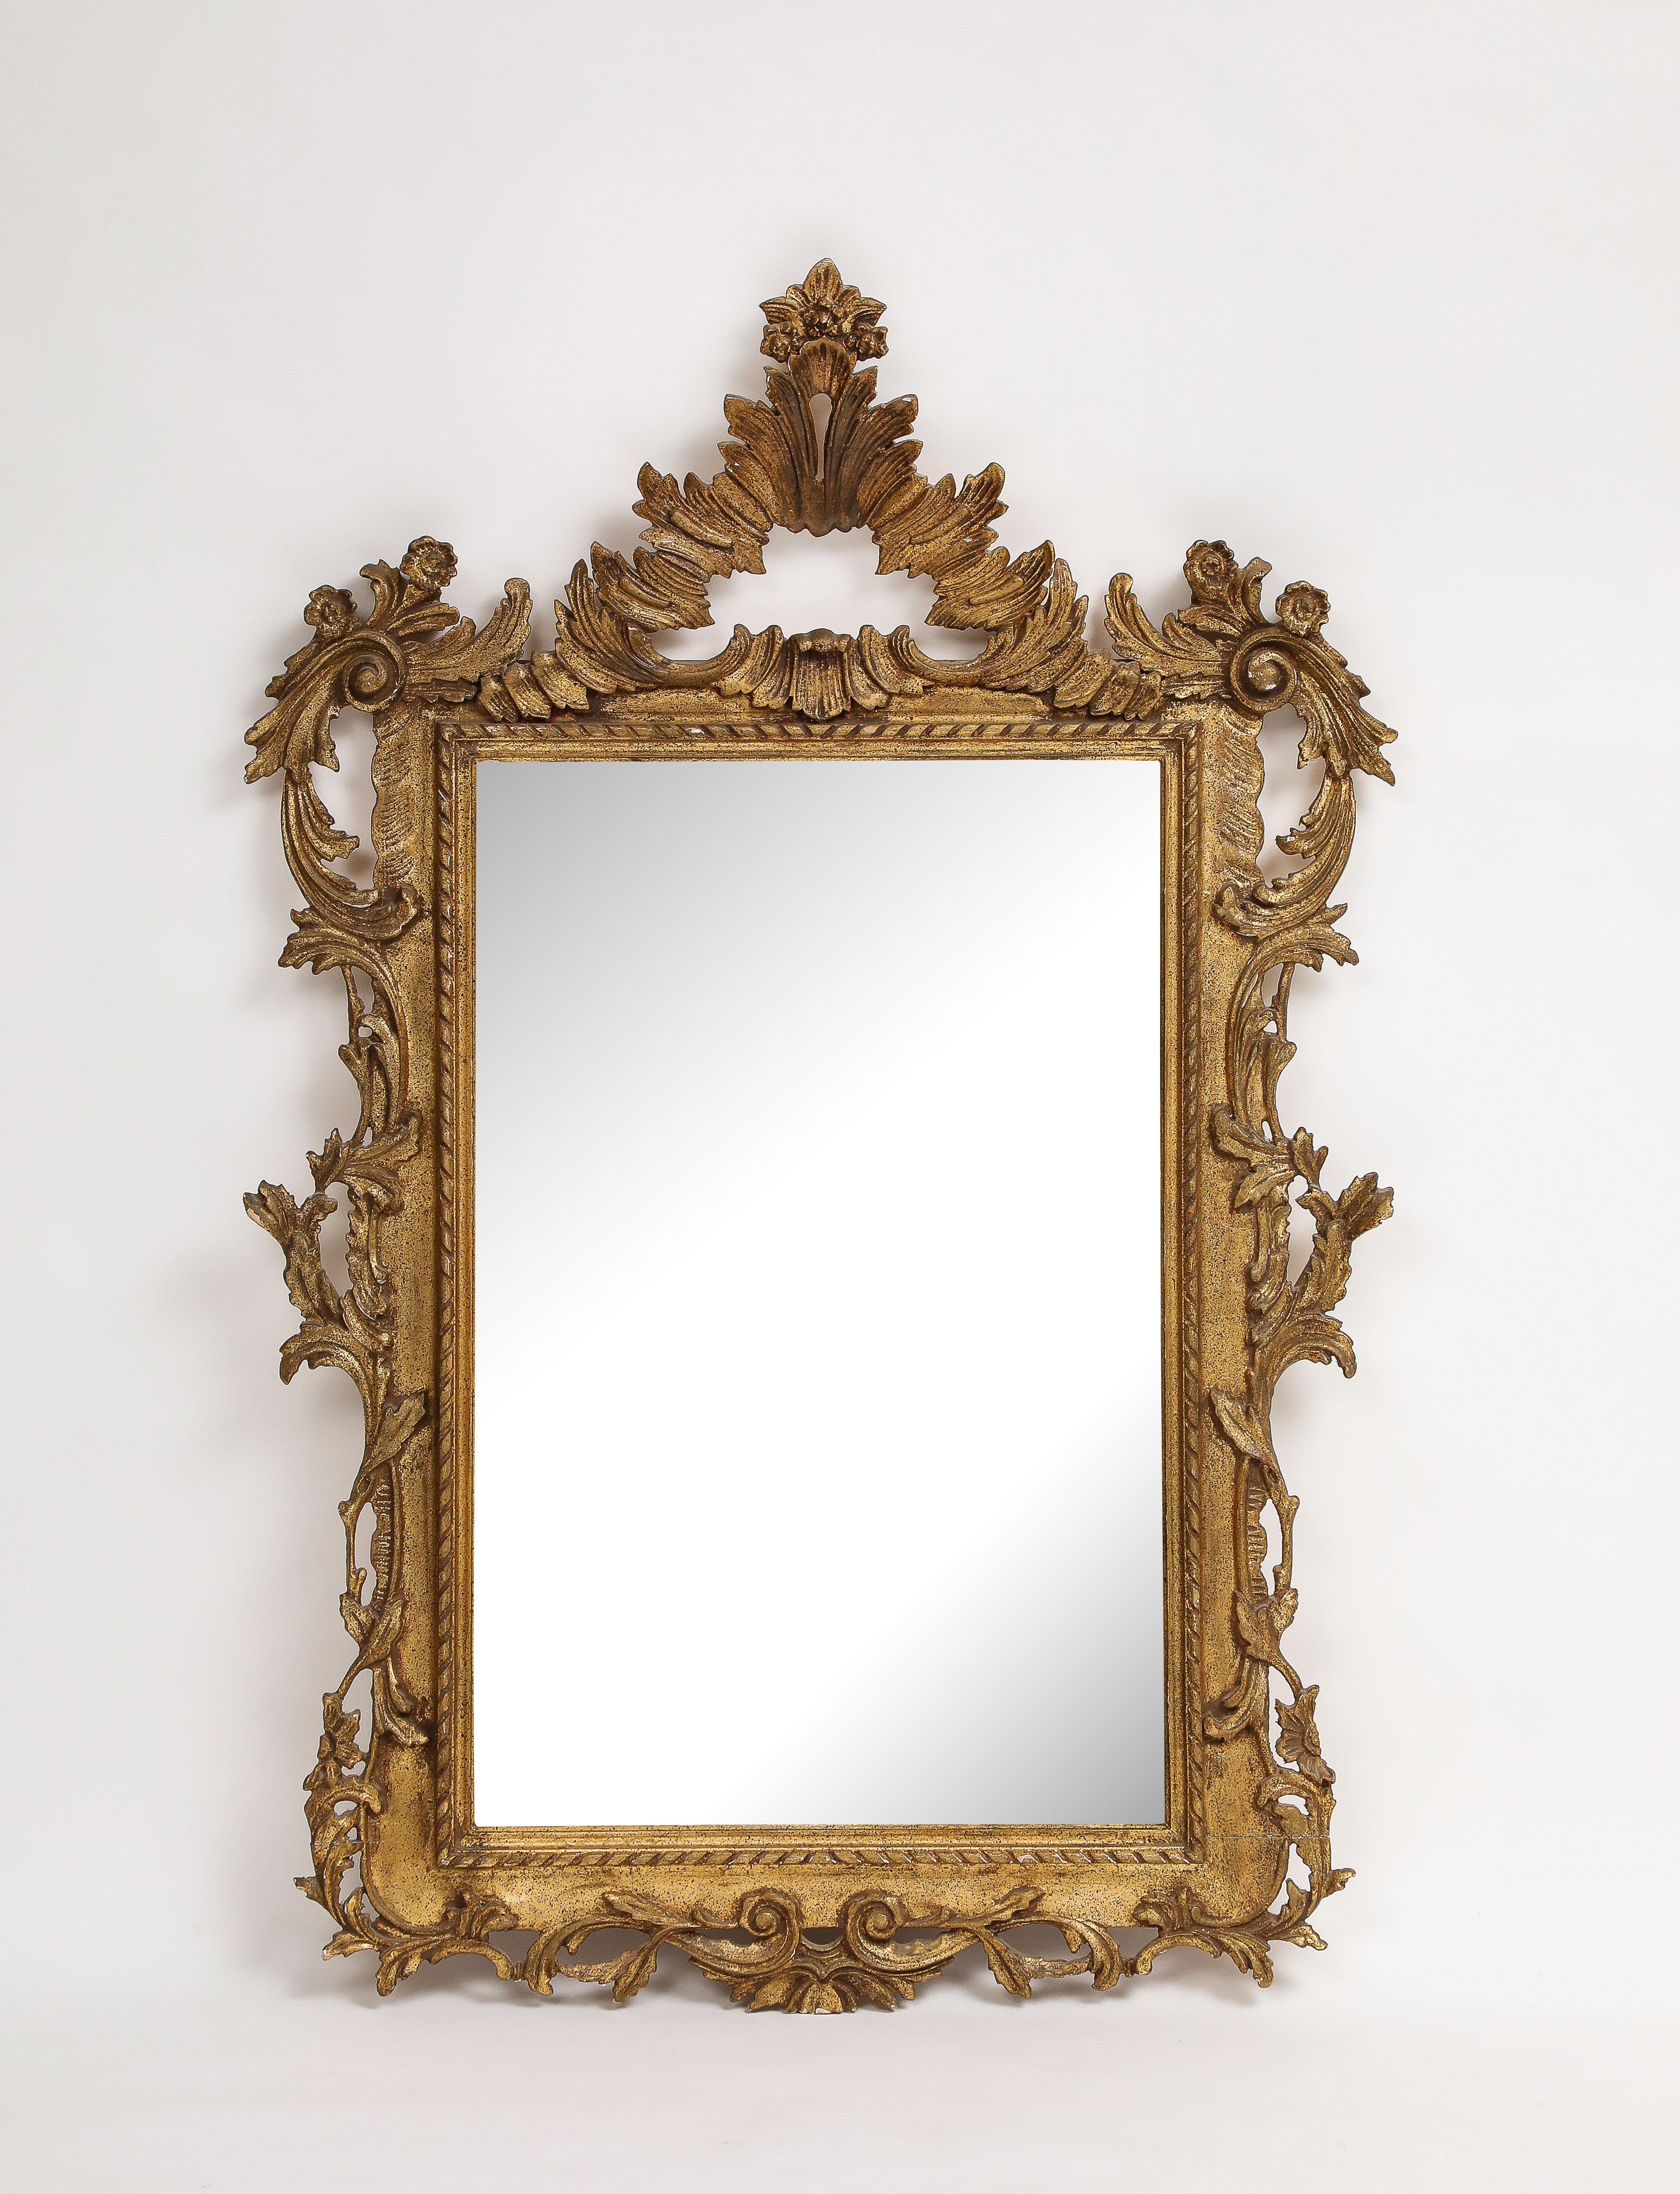 Miroir en bois doré italien du milieu du siècle, de style rococo, par John Widdicomb. Estampillé 